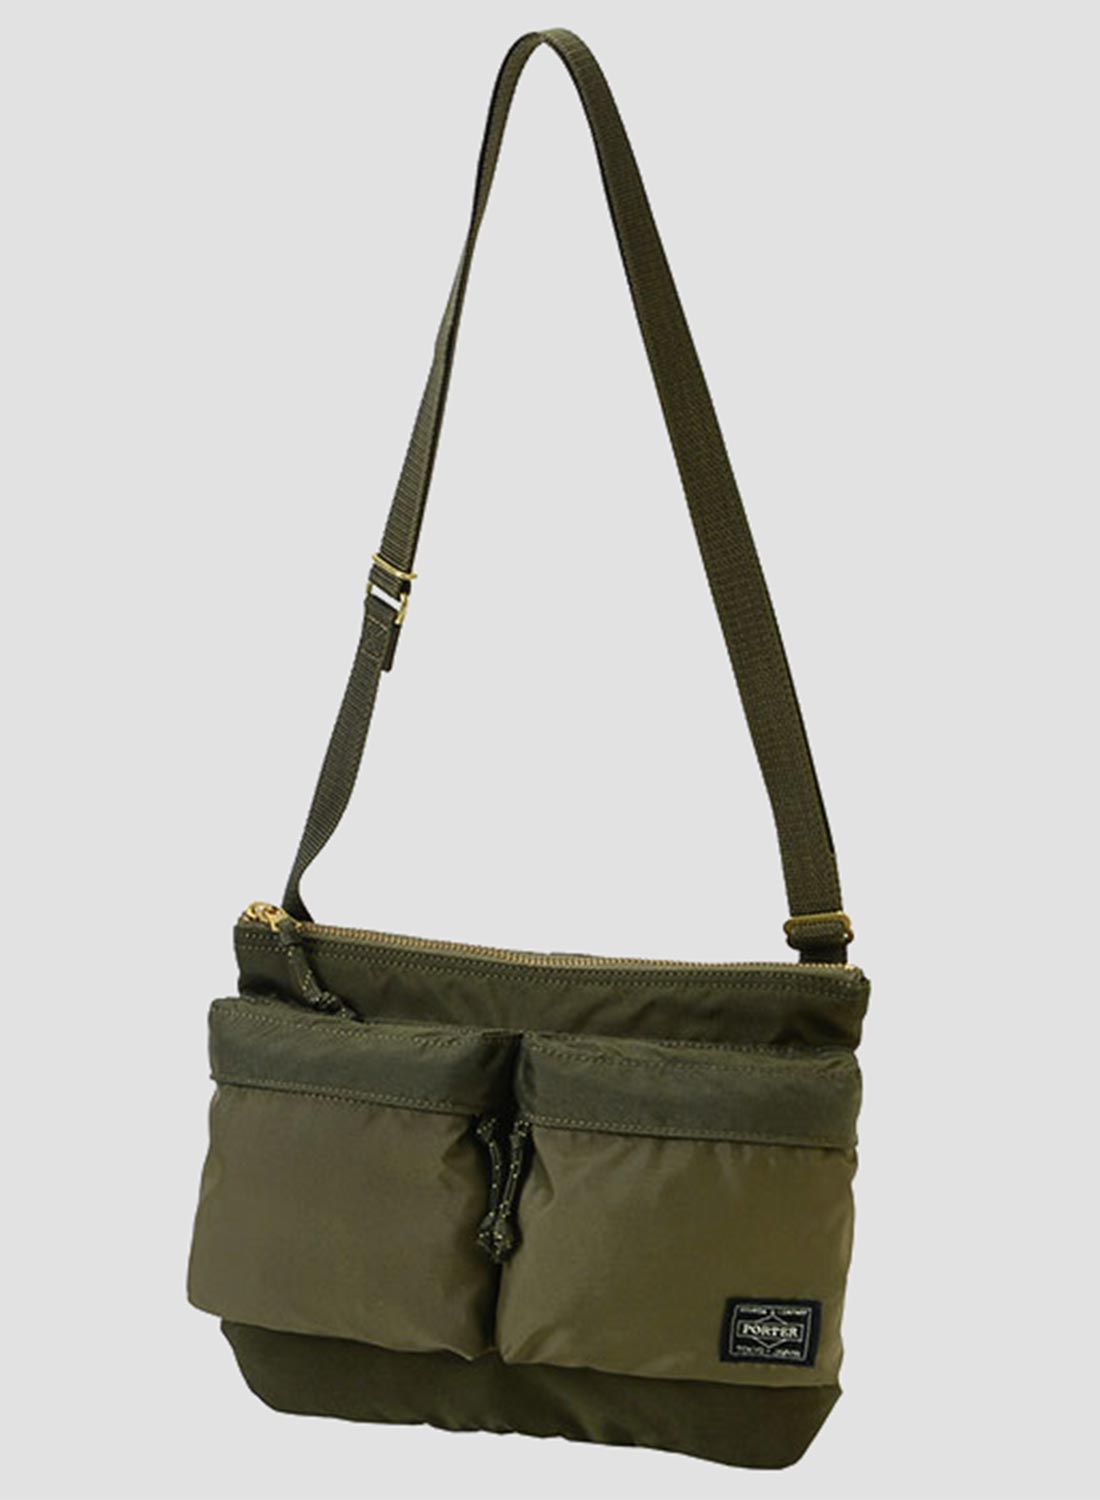 Porter-Yoshida & Co Force Shoulder Bag in Olive Drab – Nigel Cabourn